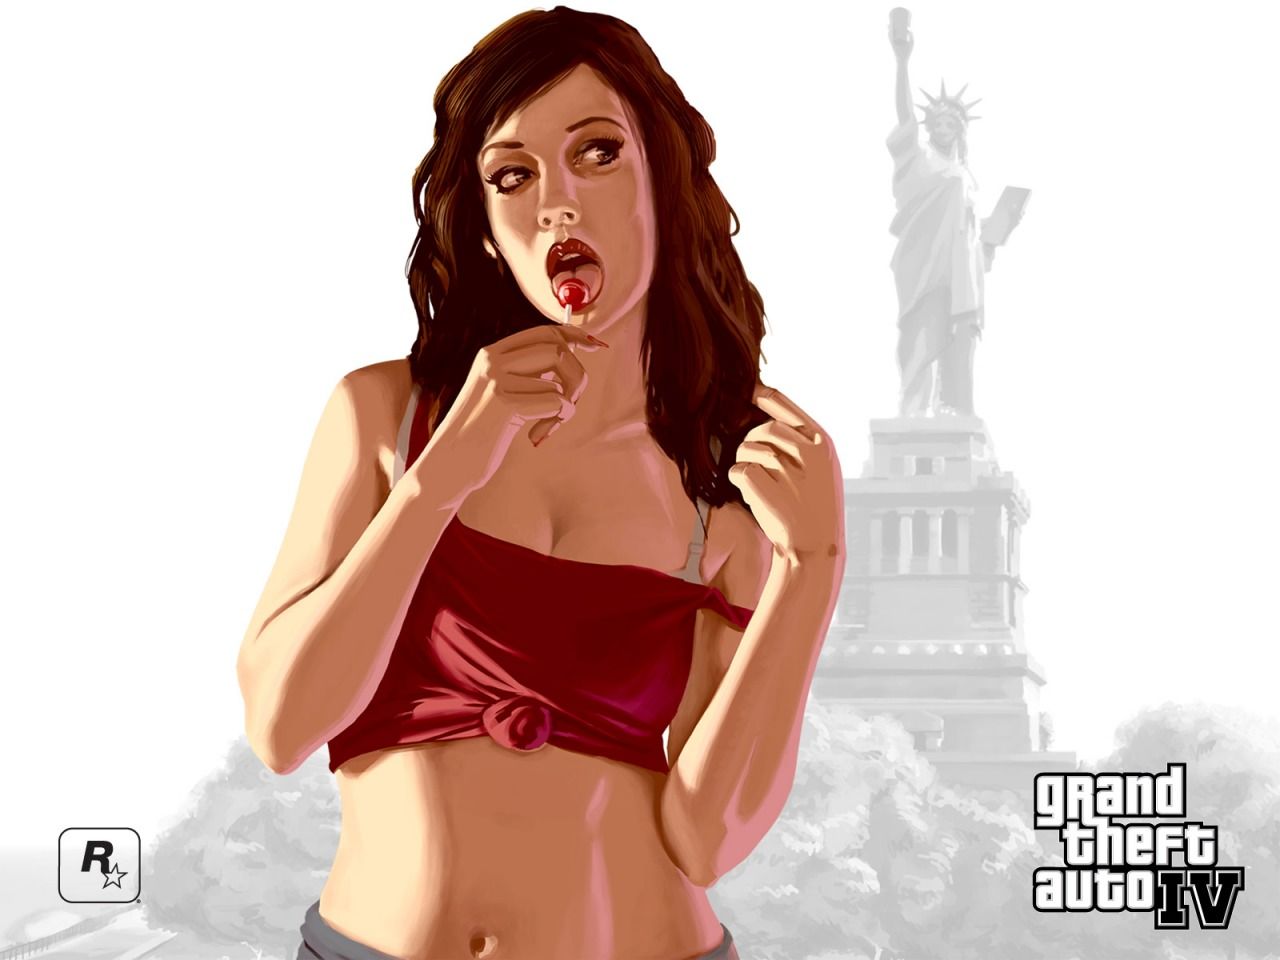 GTA 4 Girl Wallpaper GTA IV Games Wallpaper in jpg format for free download